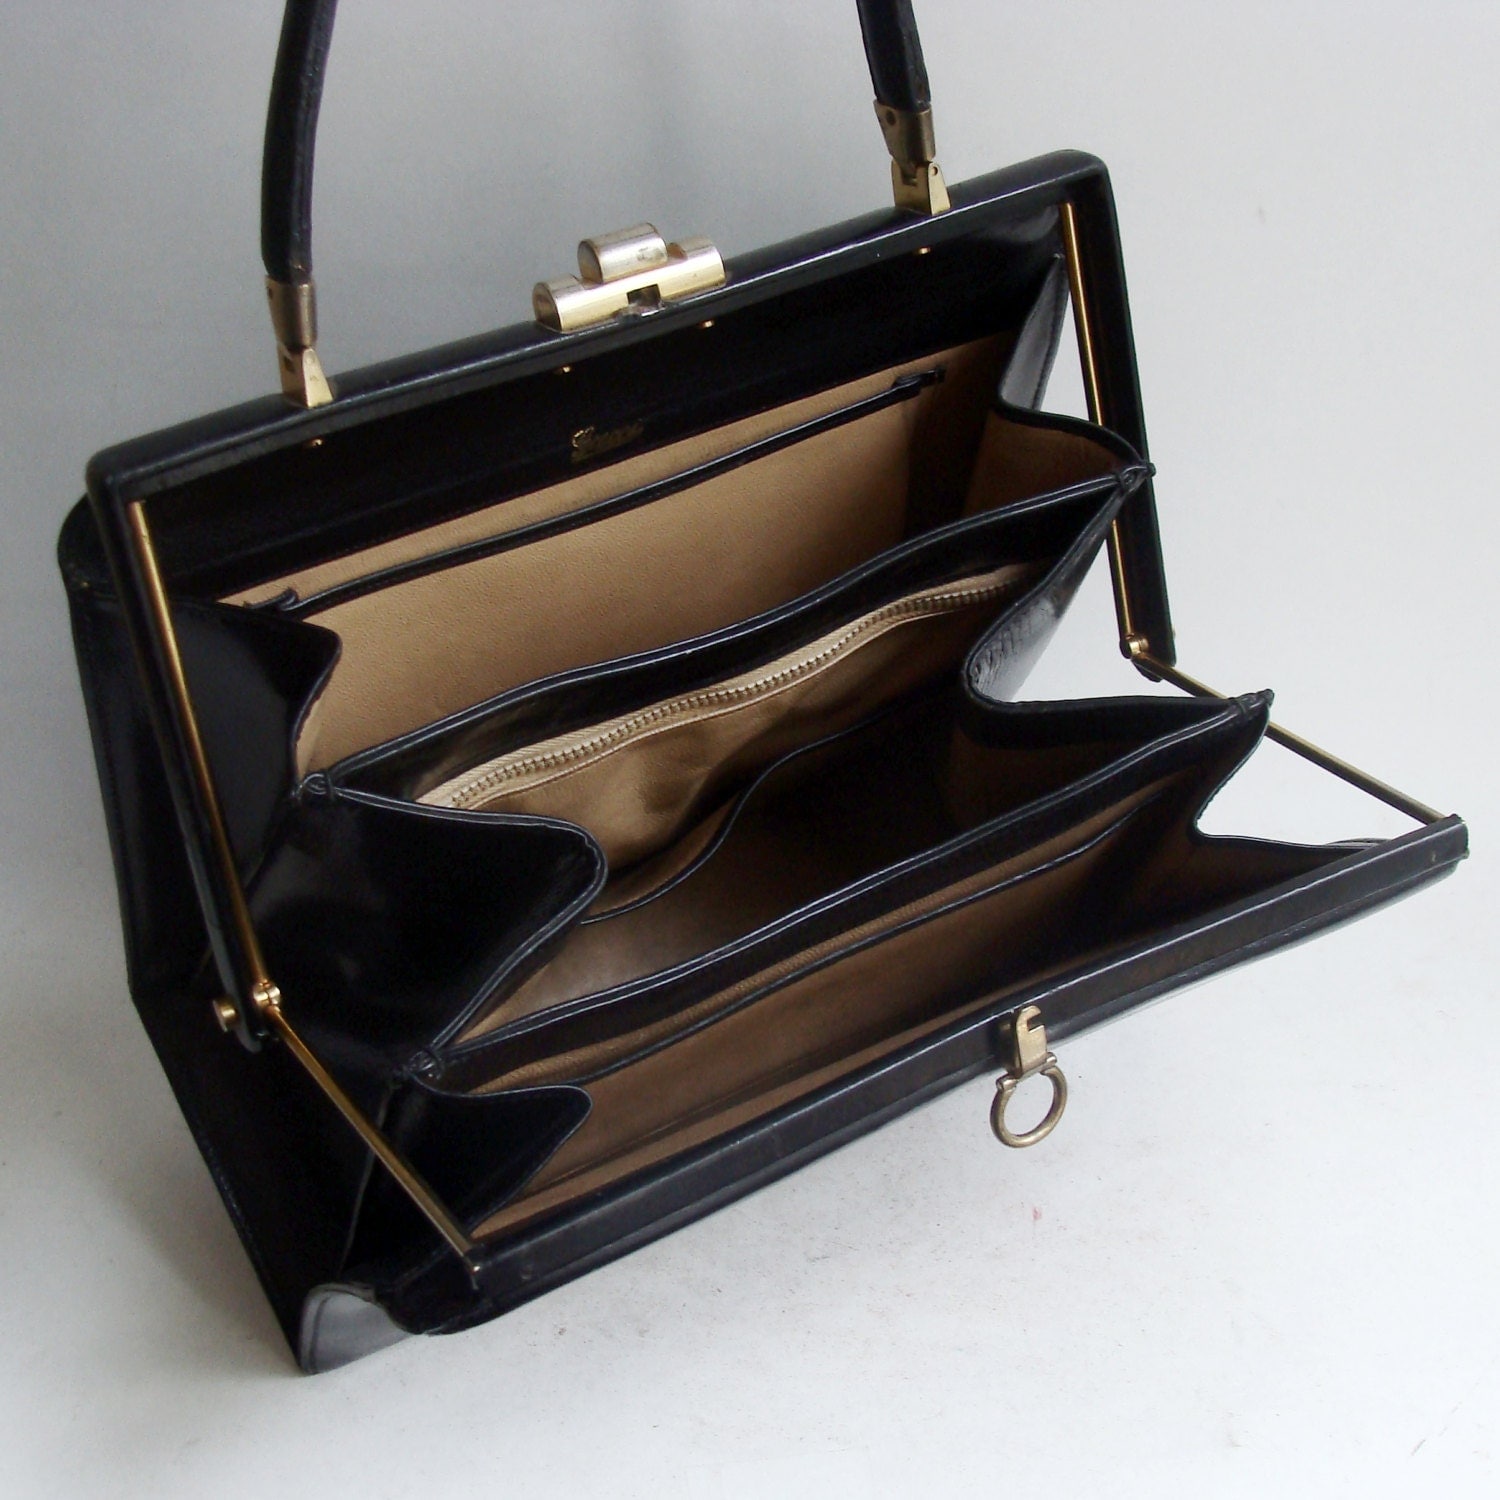 Gucci purse / vintage 1960s Gucci handbag / by OldBaltimoreVintage